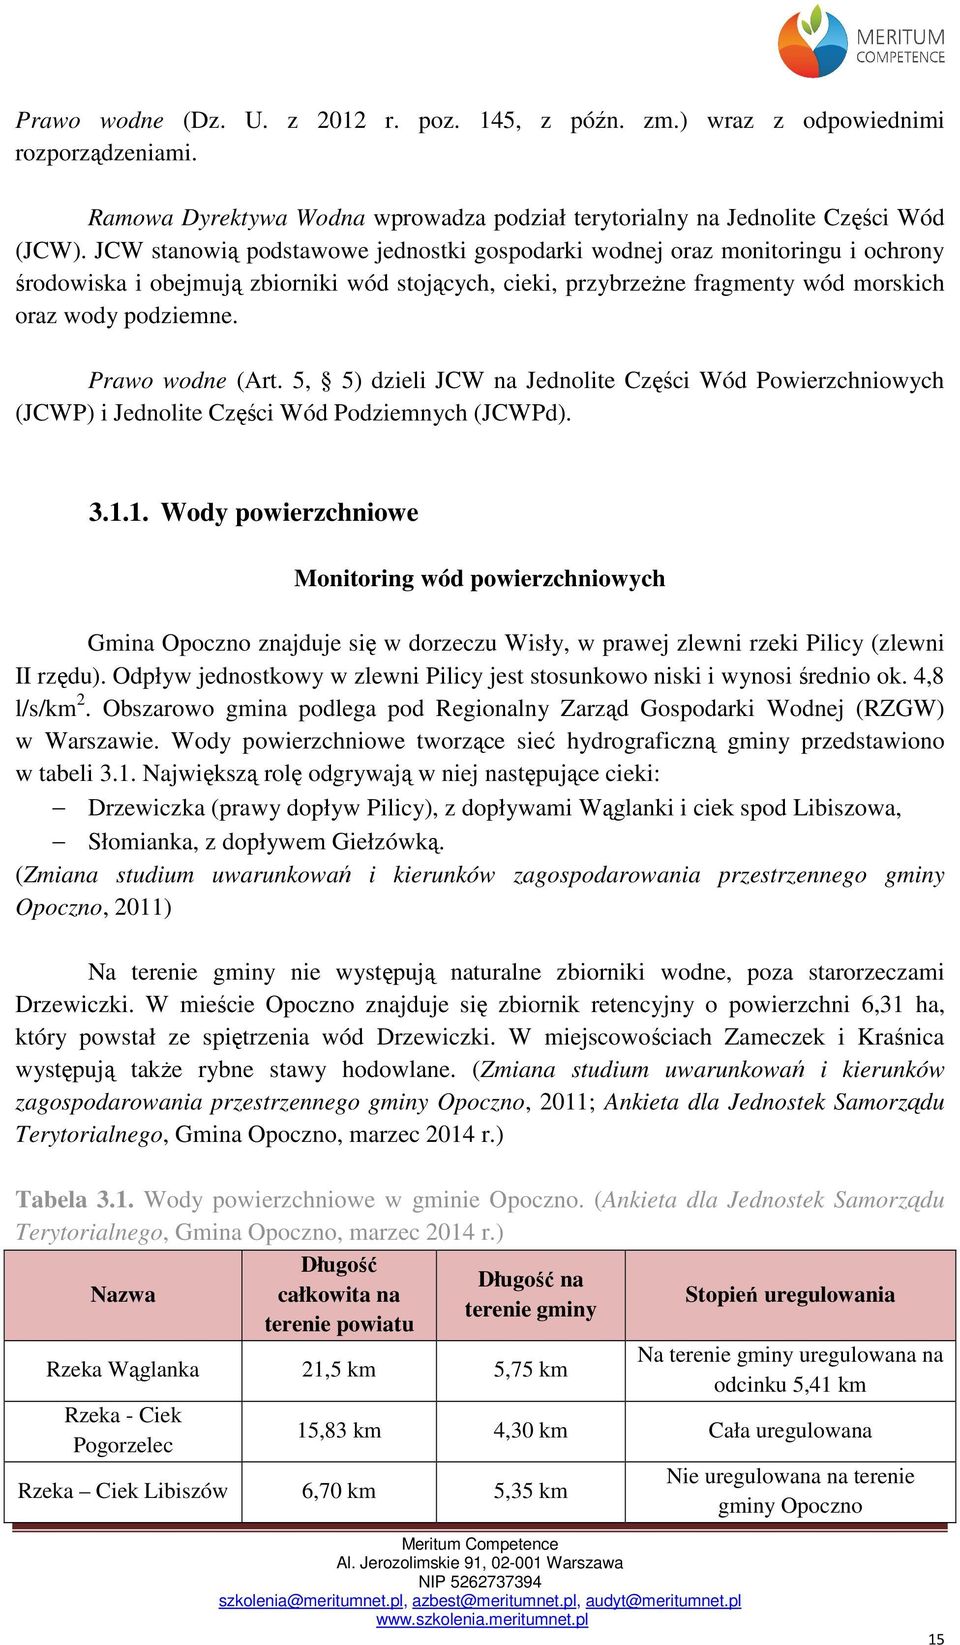 Prawo wodne (Art. 5, 5) dzieli JCW na Jednolite Części Wód Powierzchniowych (JCWP) i Jednolite Części Wód Podziemnych (JCWPd). 3.1.